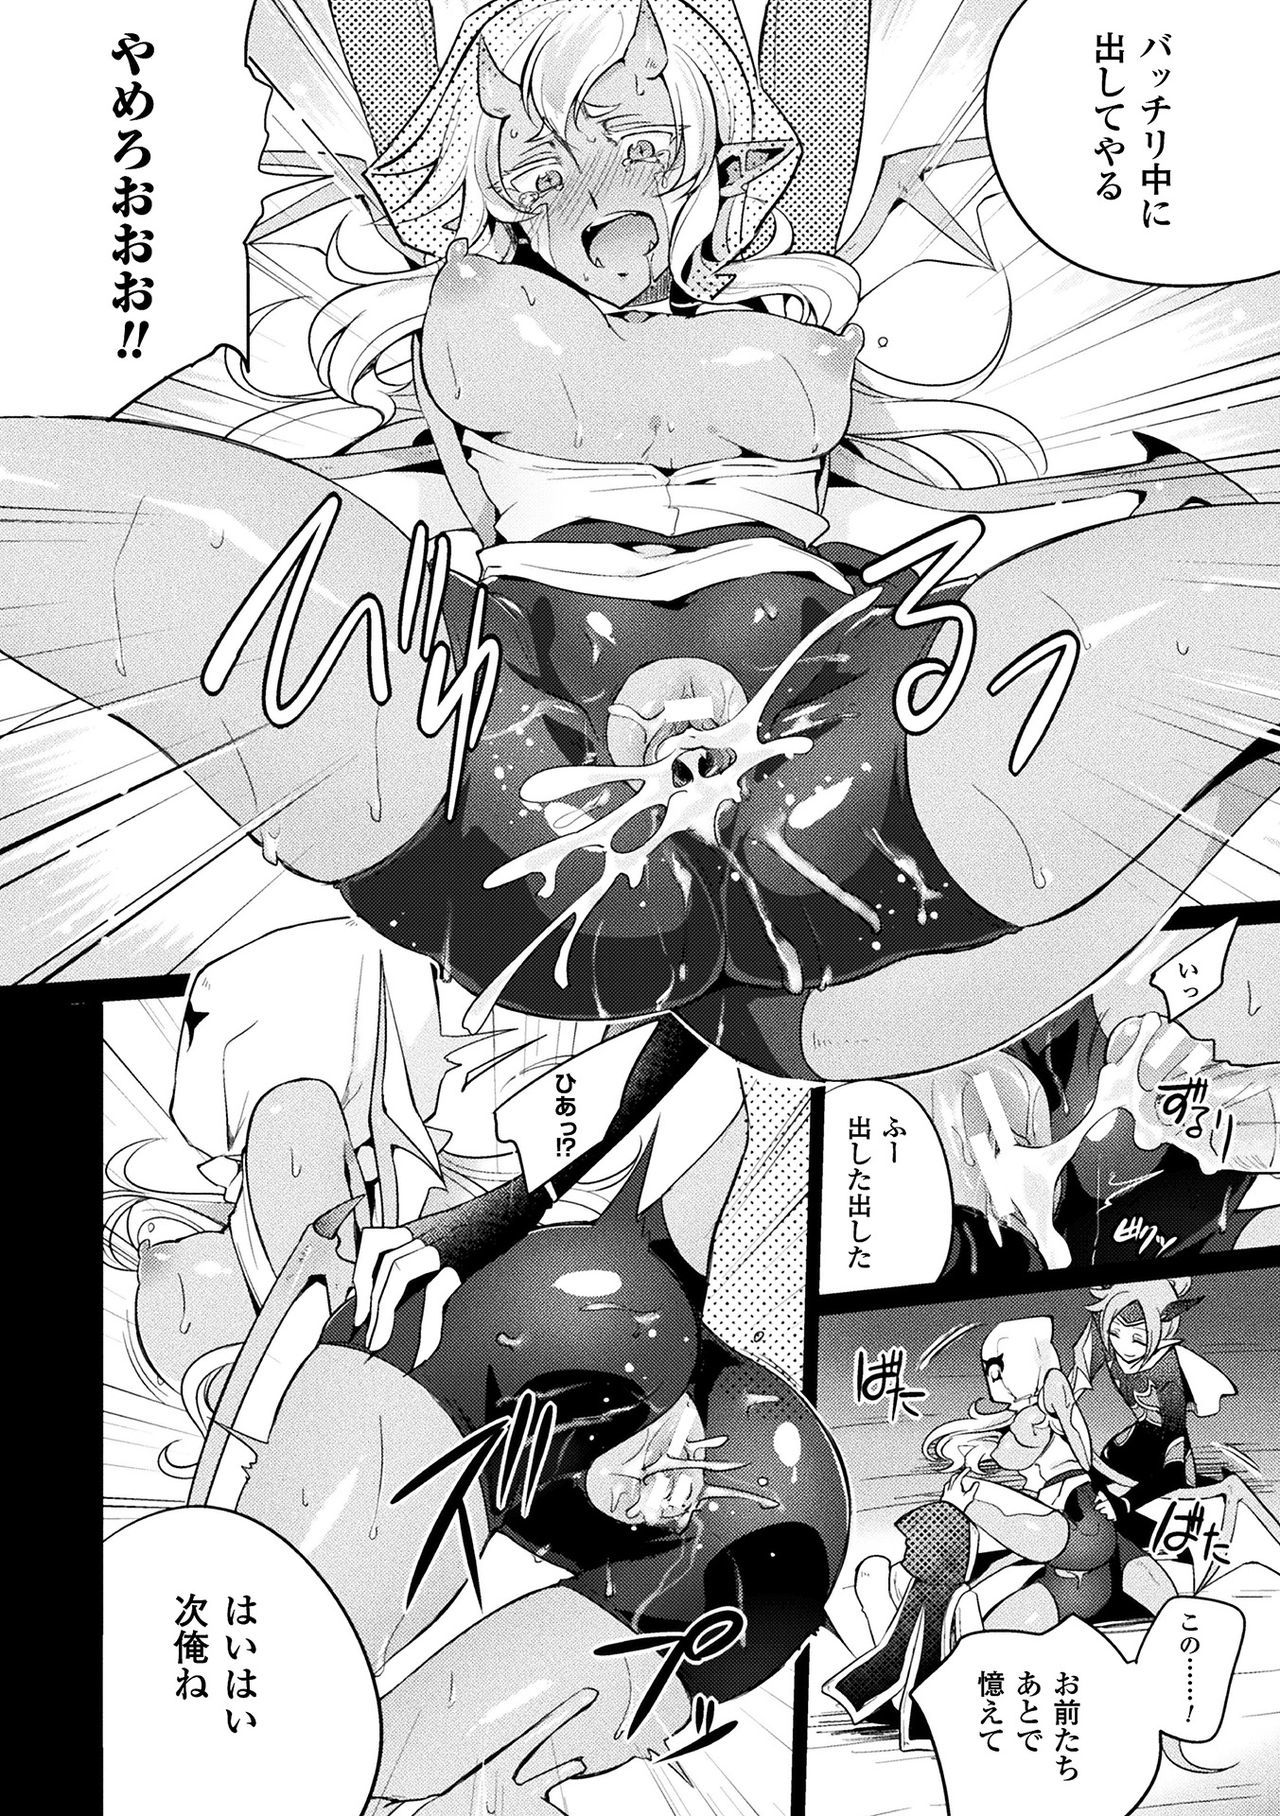 2Dコミックマガジン袋をかぶせられた菅田でなられるヒロイン太刀V​​ol。 2